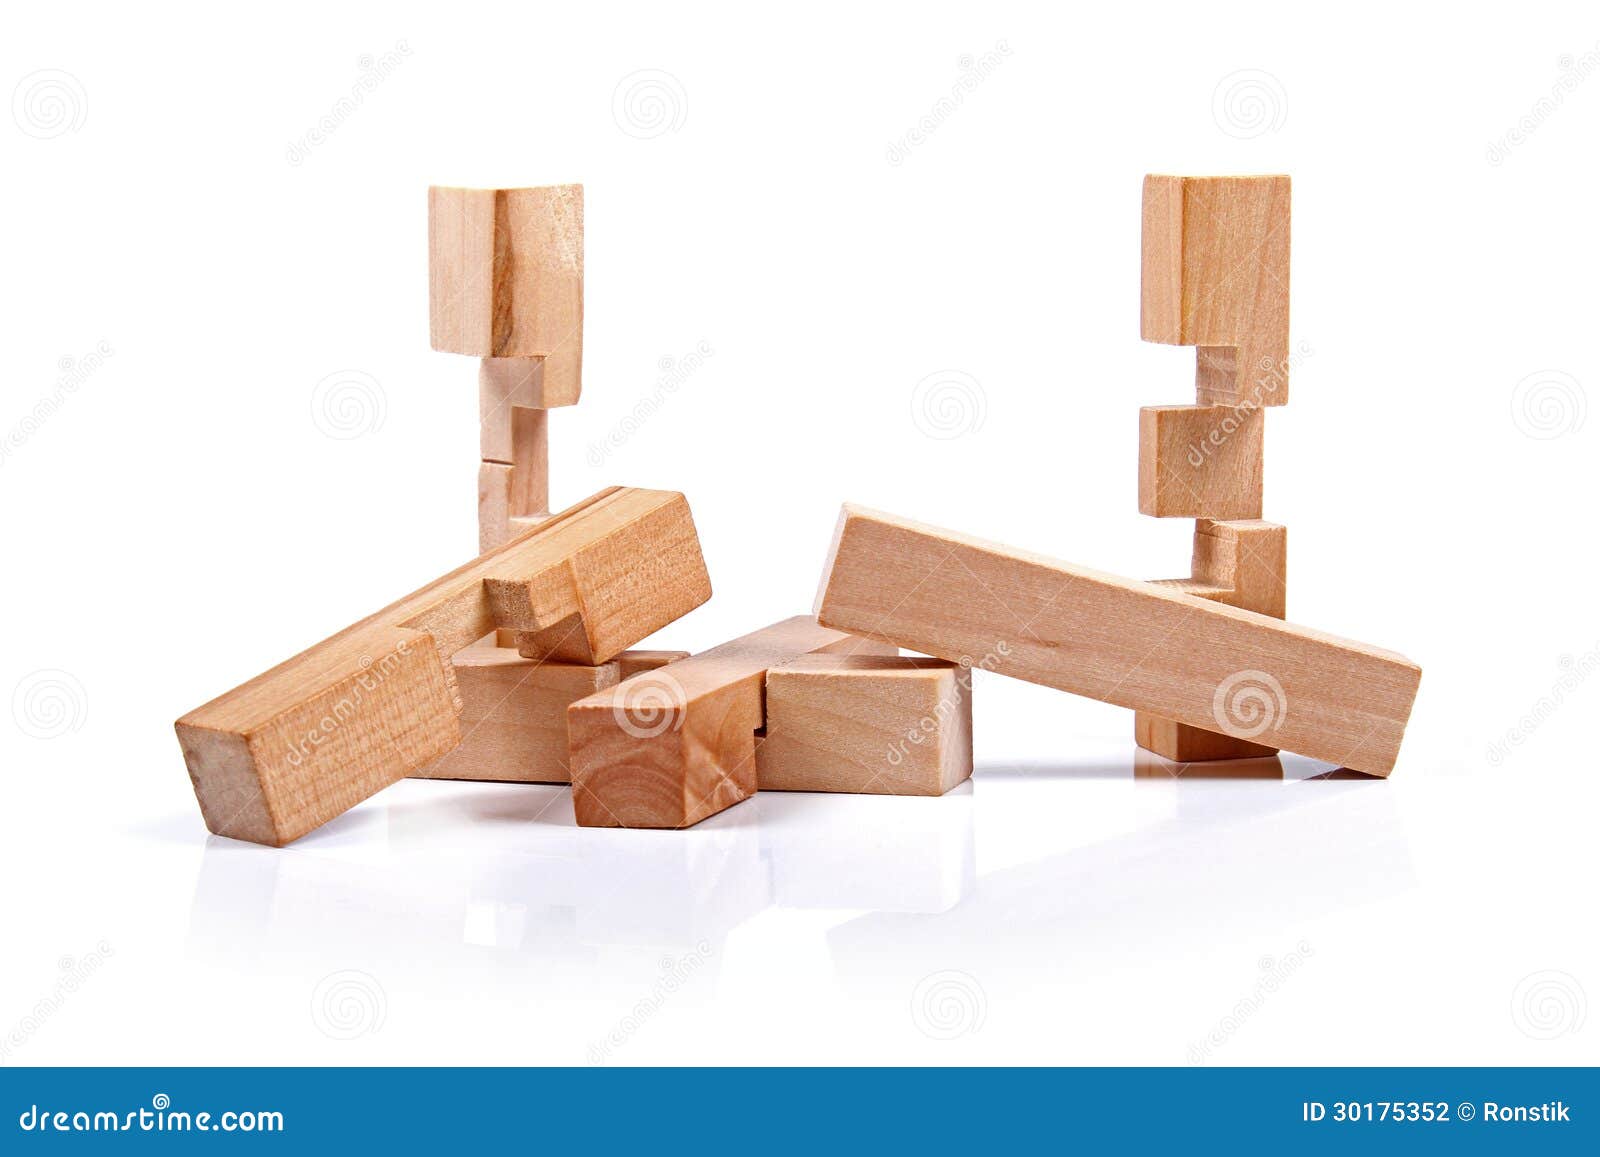 Rompicapo rompicapo rompicapo rompicapo rompicapo giocattolo in legno WQ 